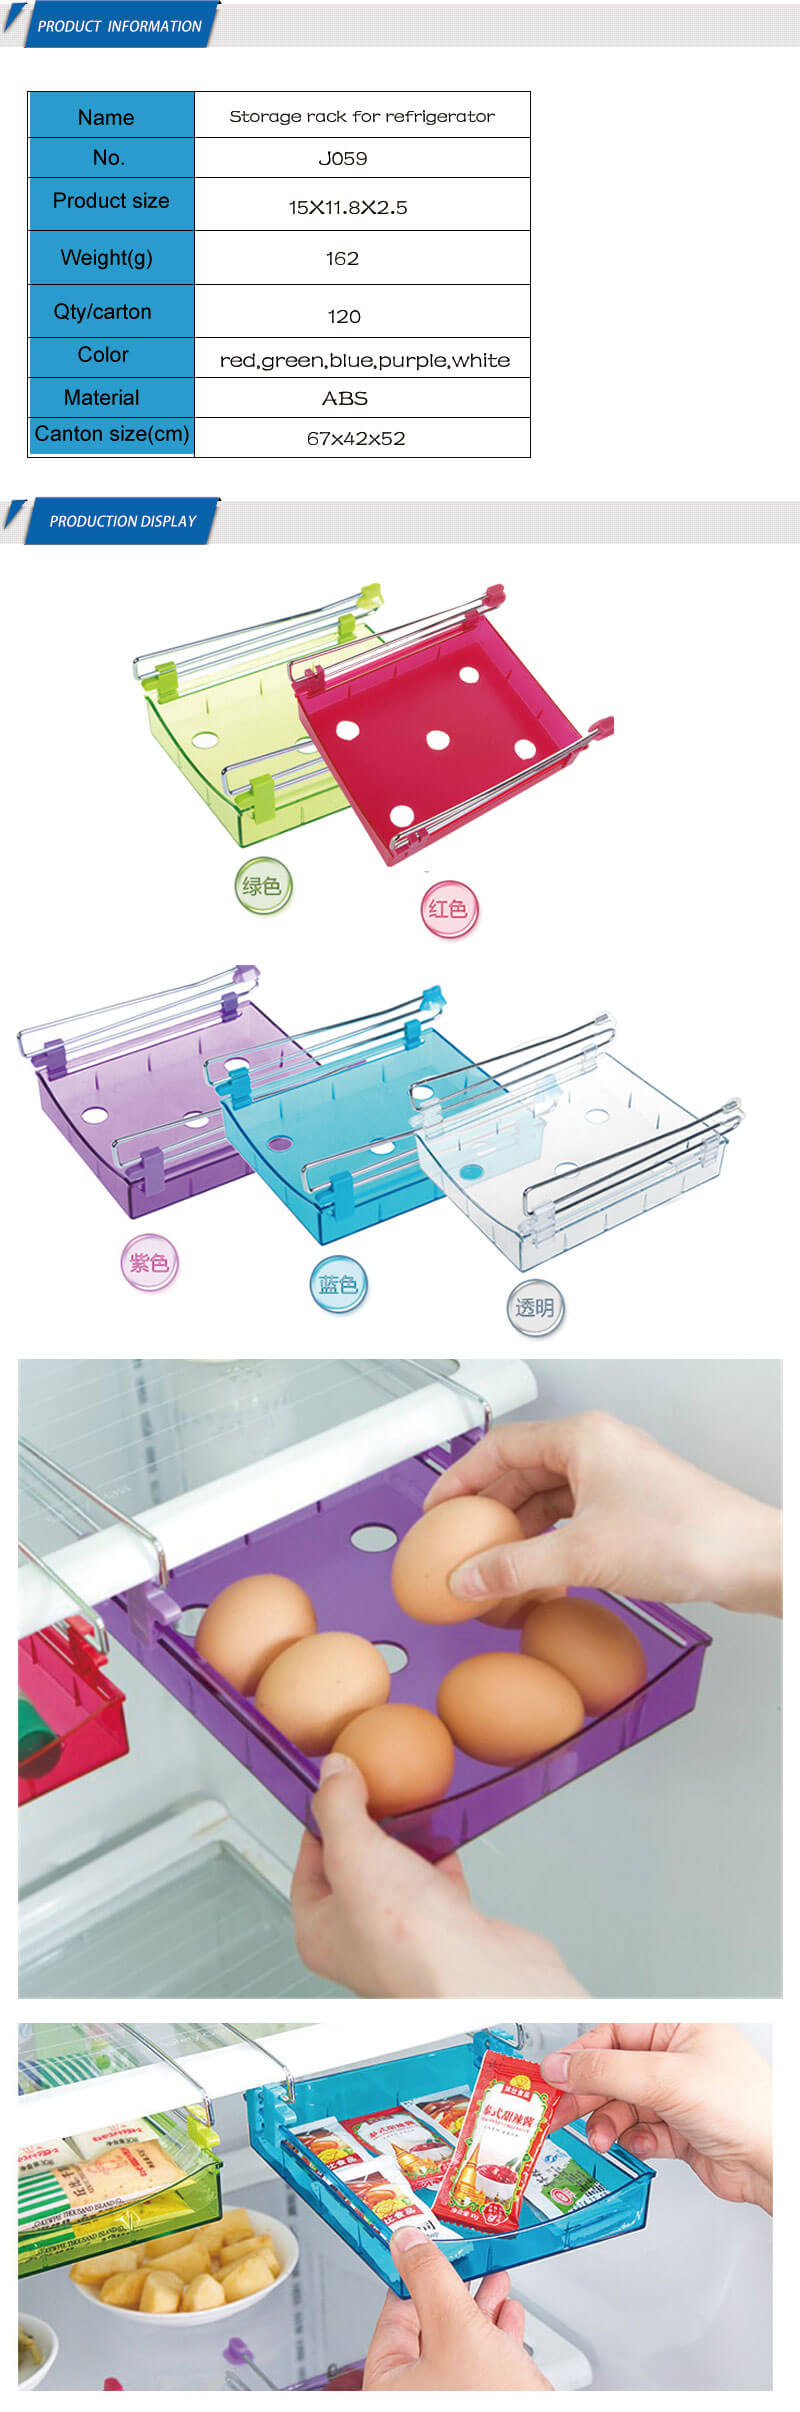 Vegetable Refrigerator Fruit Egg Cold Freezer Storage Drawer